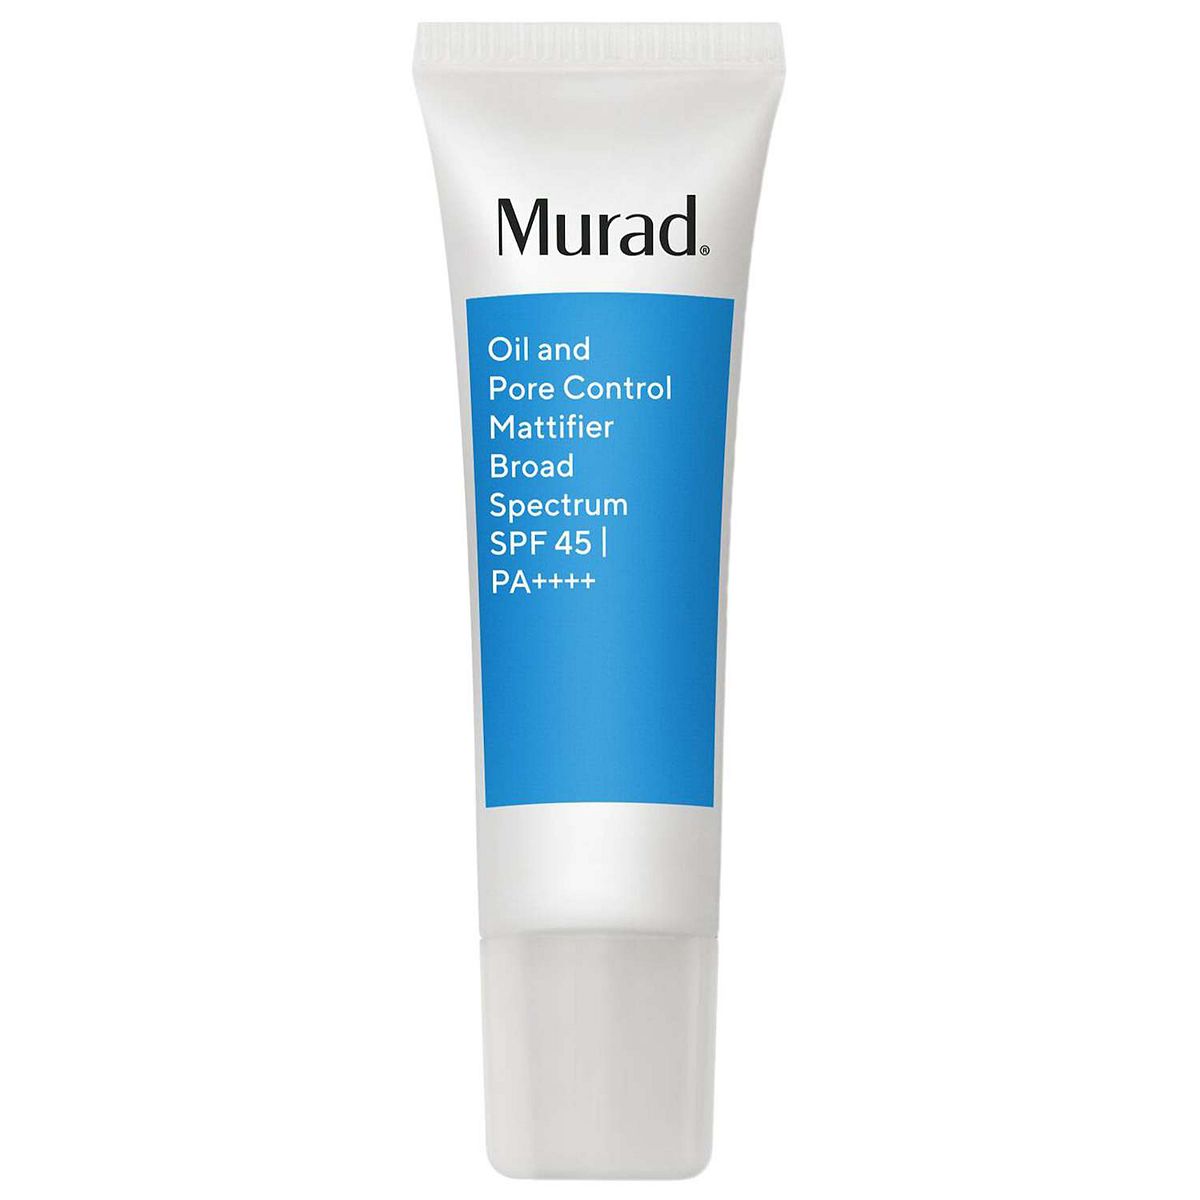 Murad Oil And Pore Control Mattifier SPF 45 PA++++